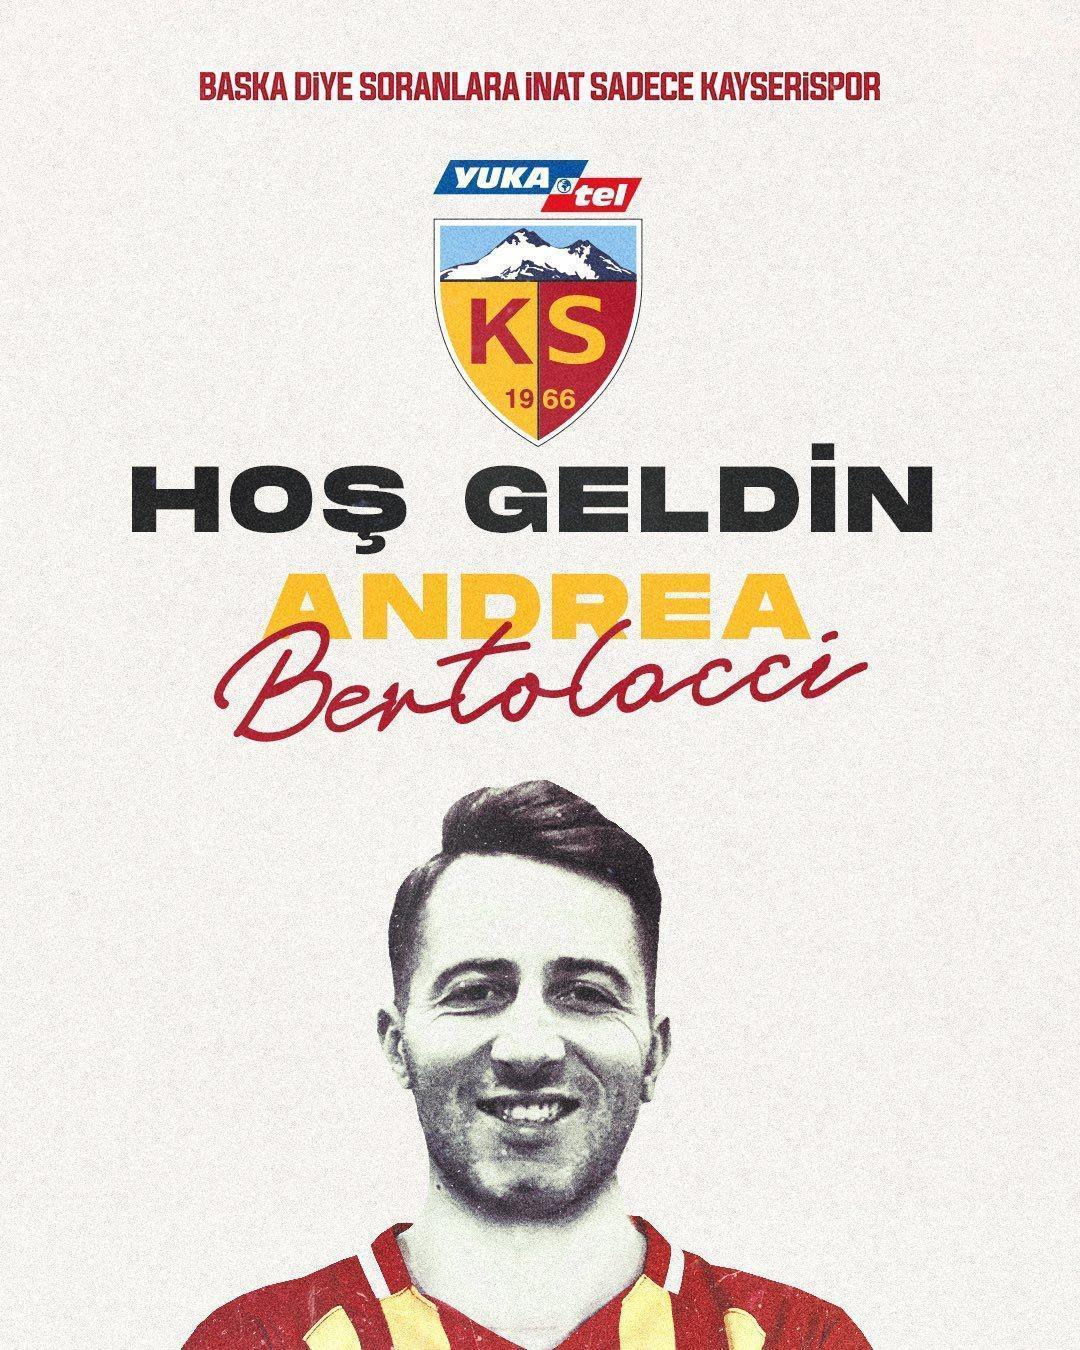 Andrea Bertolacciden Kayserispora 2.5 yıllık imza